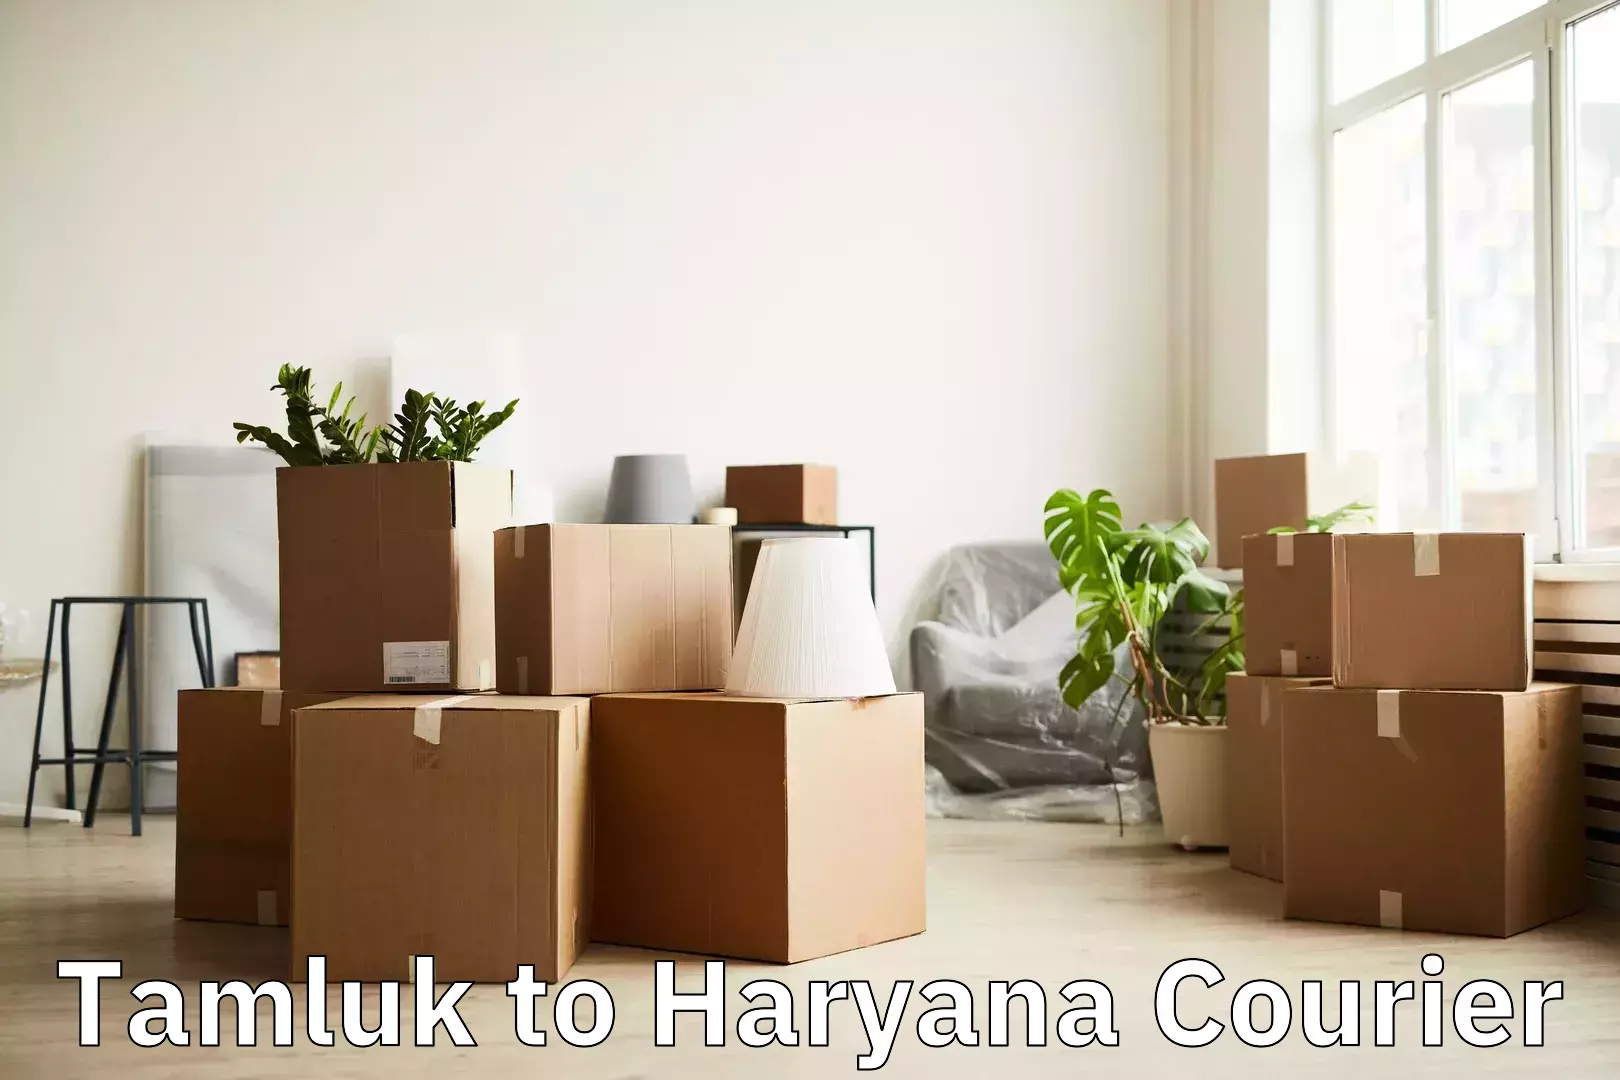 Luggage transport schedule Tamluk to NCR Haryana